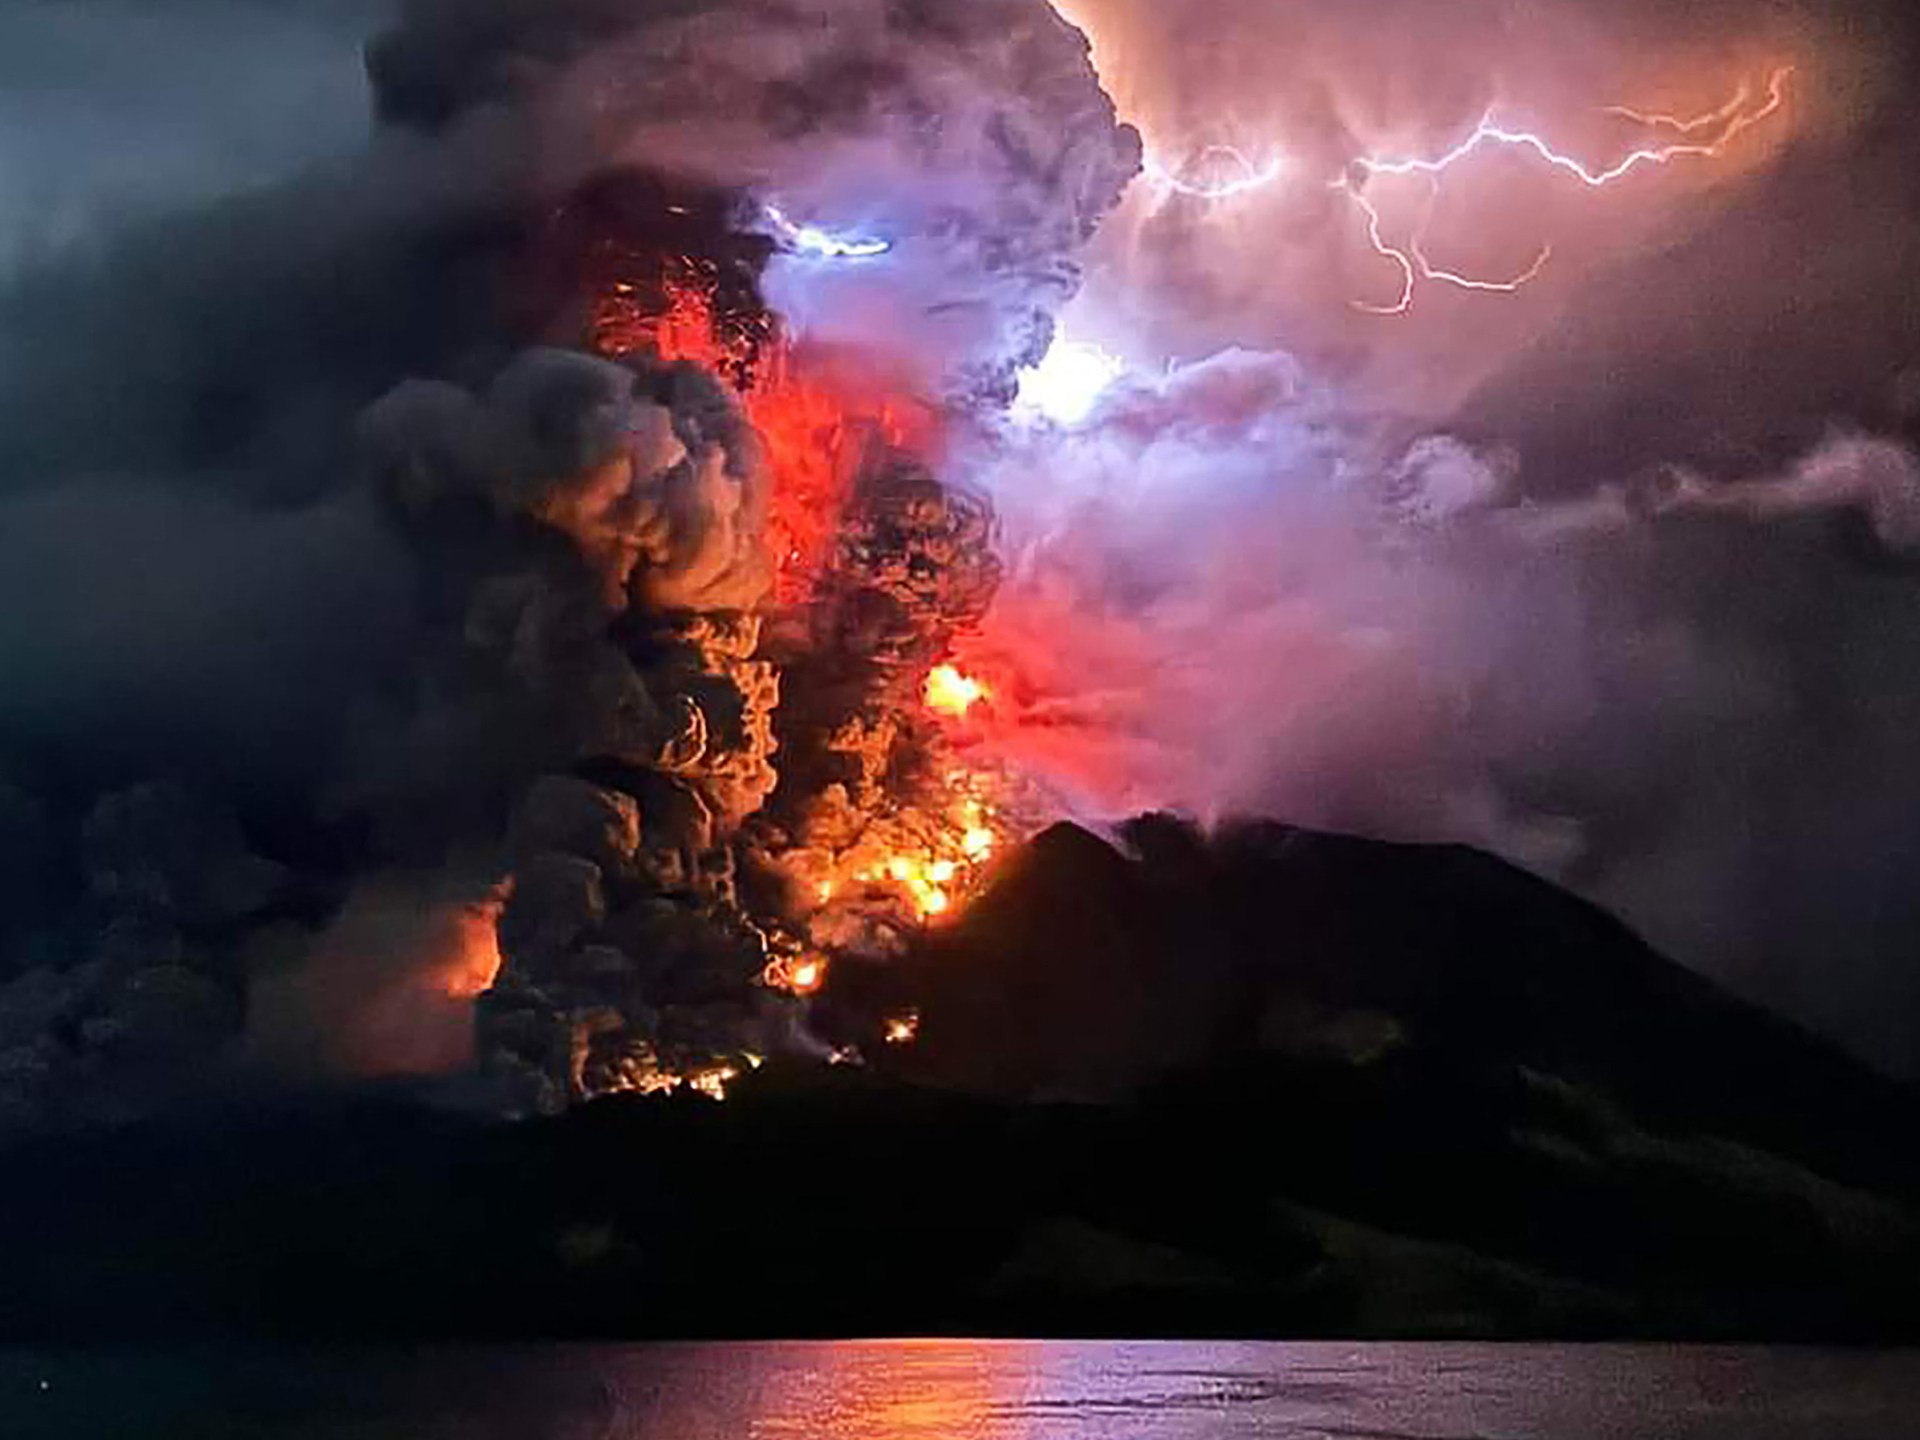 11.000 orang dievakuasi saat gunung berapi Ruang meletus di Indonesia utara |  Berita gunung berapi